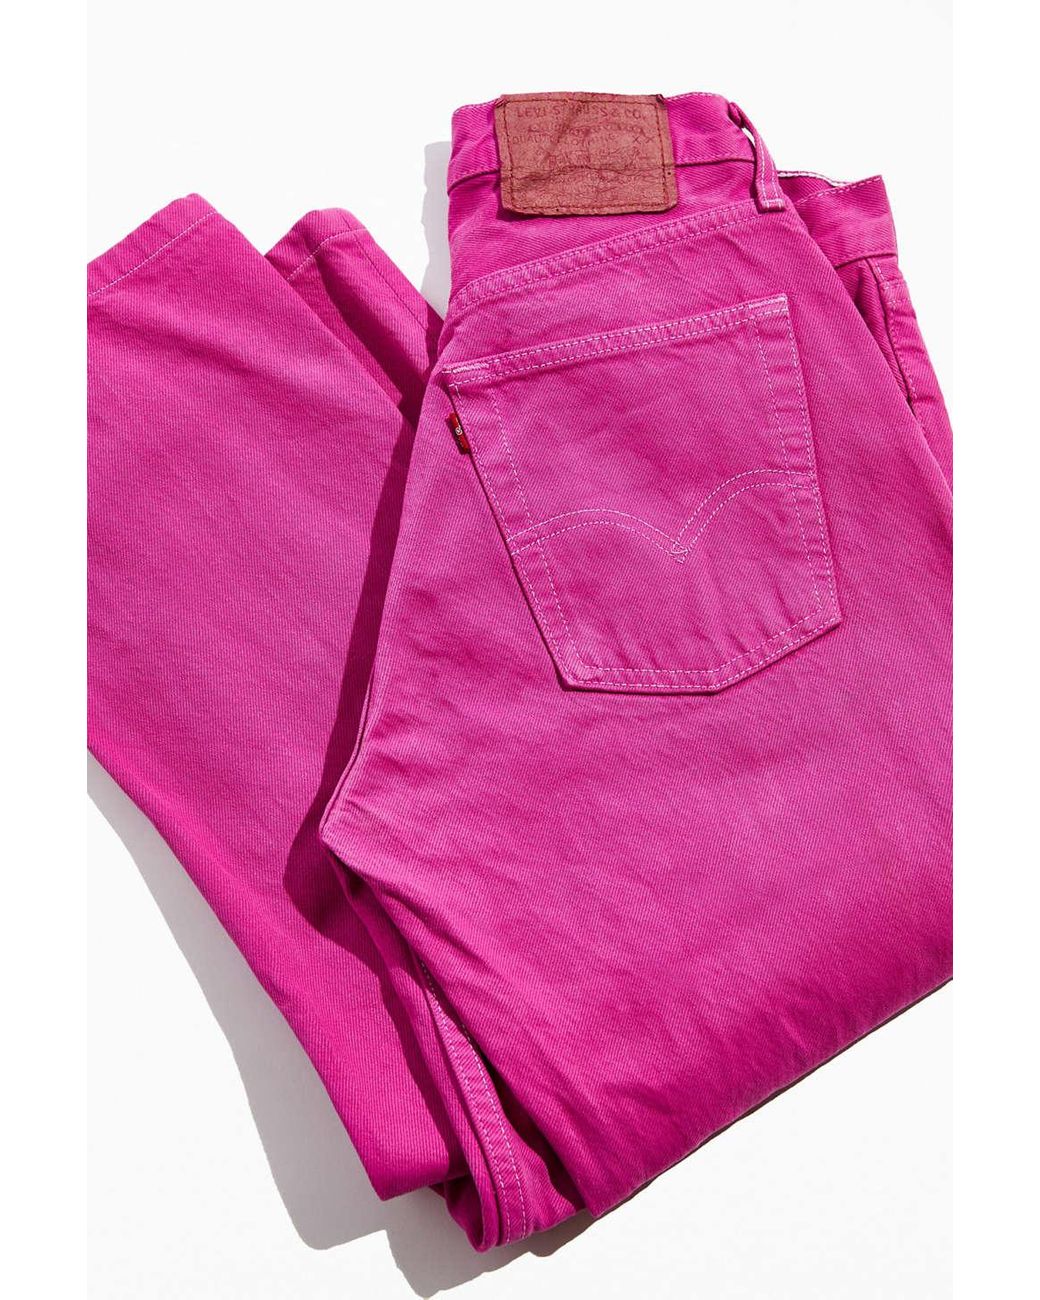 Levi's Vintage Levi's Hot Pink Jean for Men